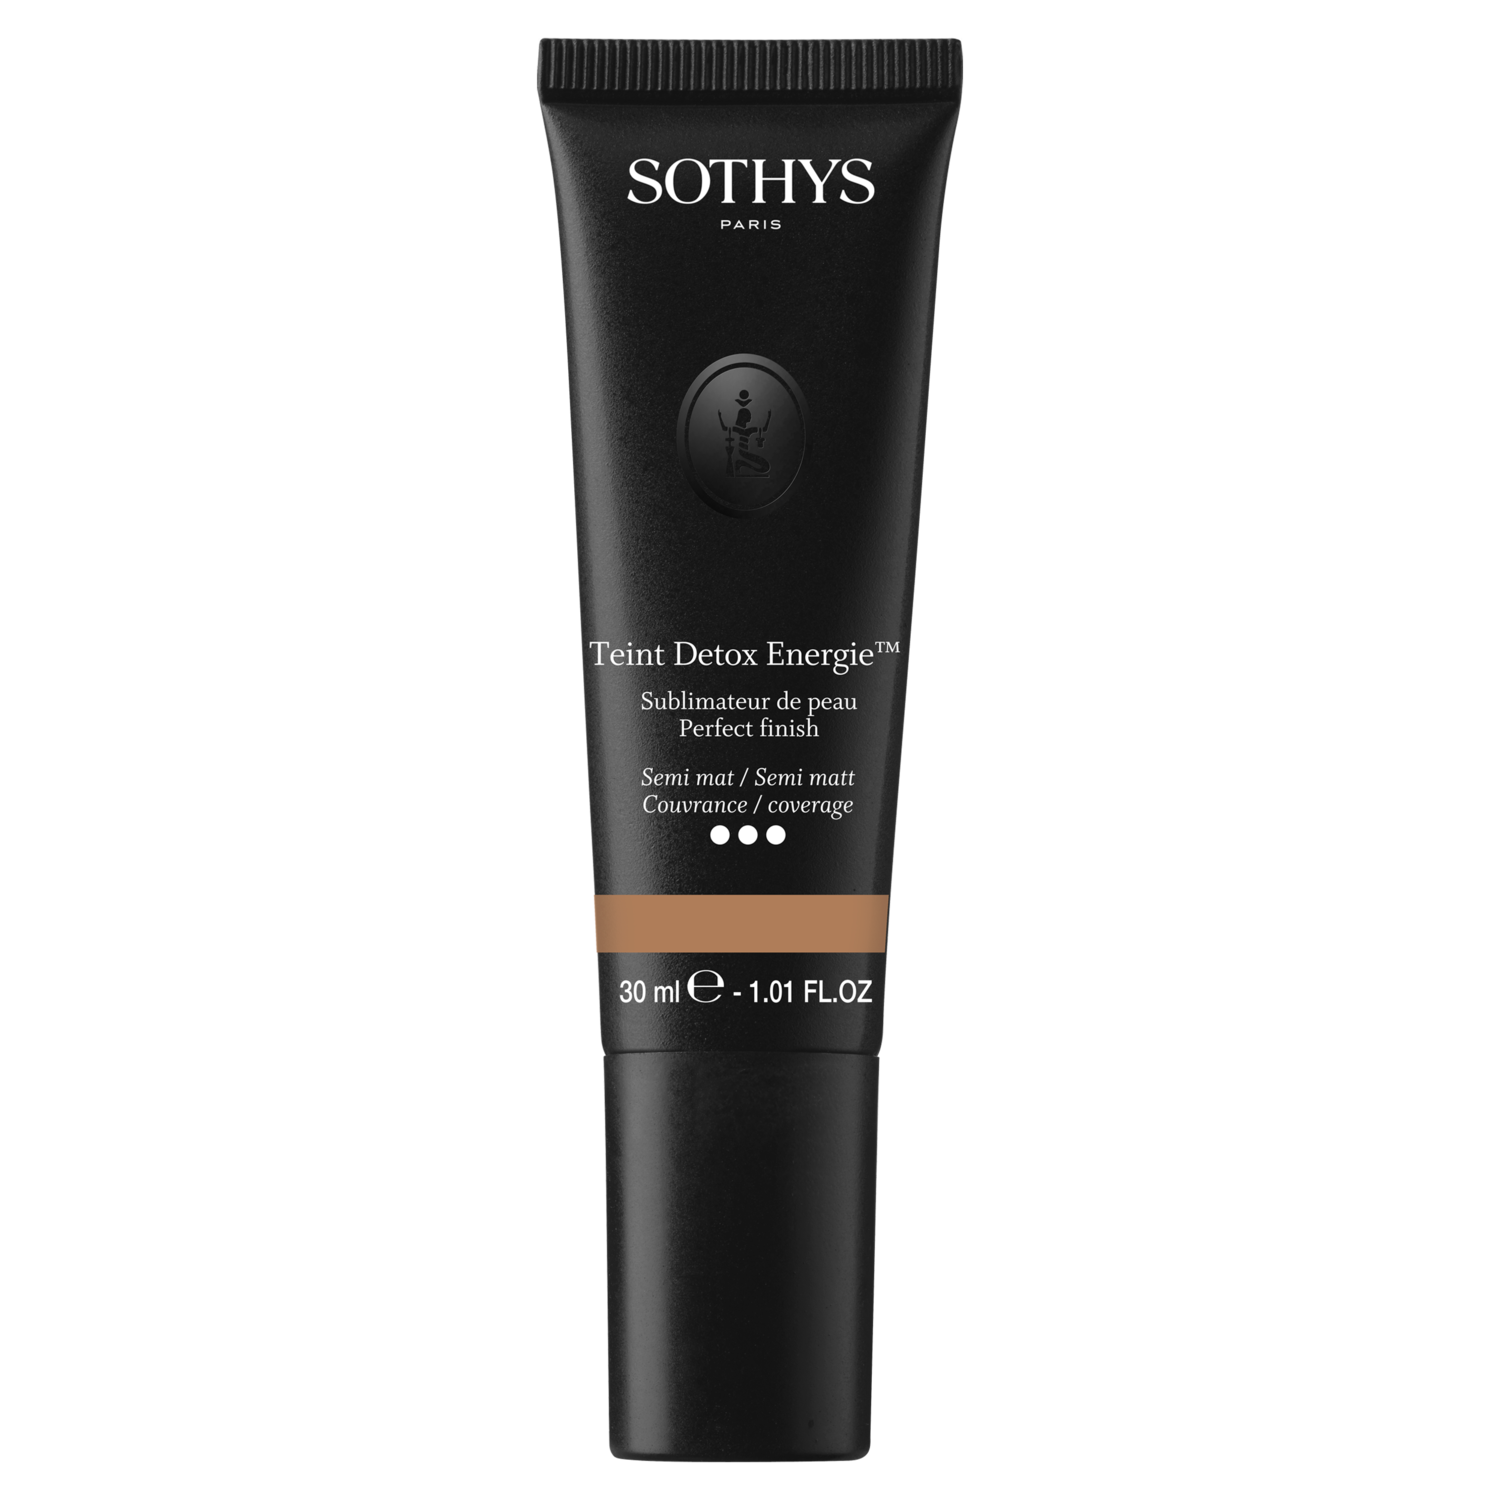 Sothys - Fond de teint - Teint Detox Energie, Sublimateur de peau | ÉLU ...